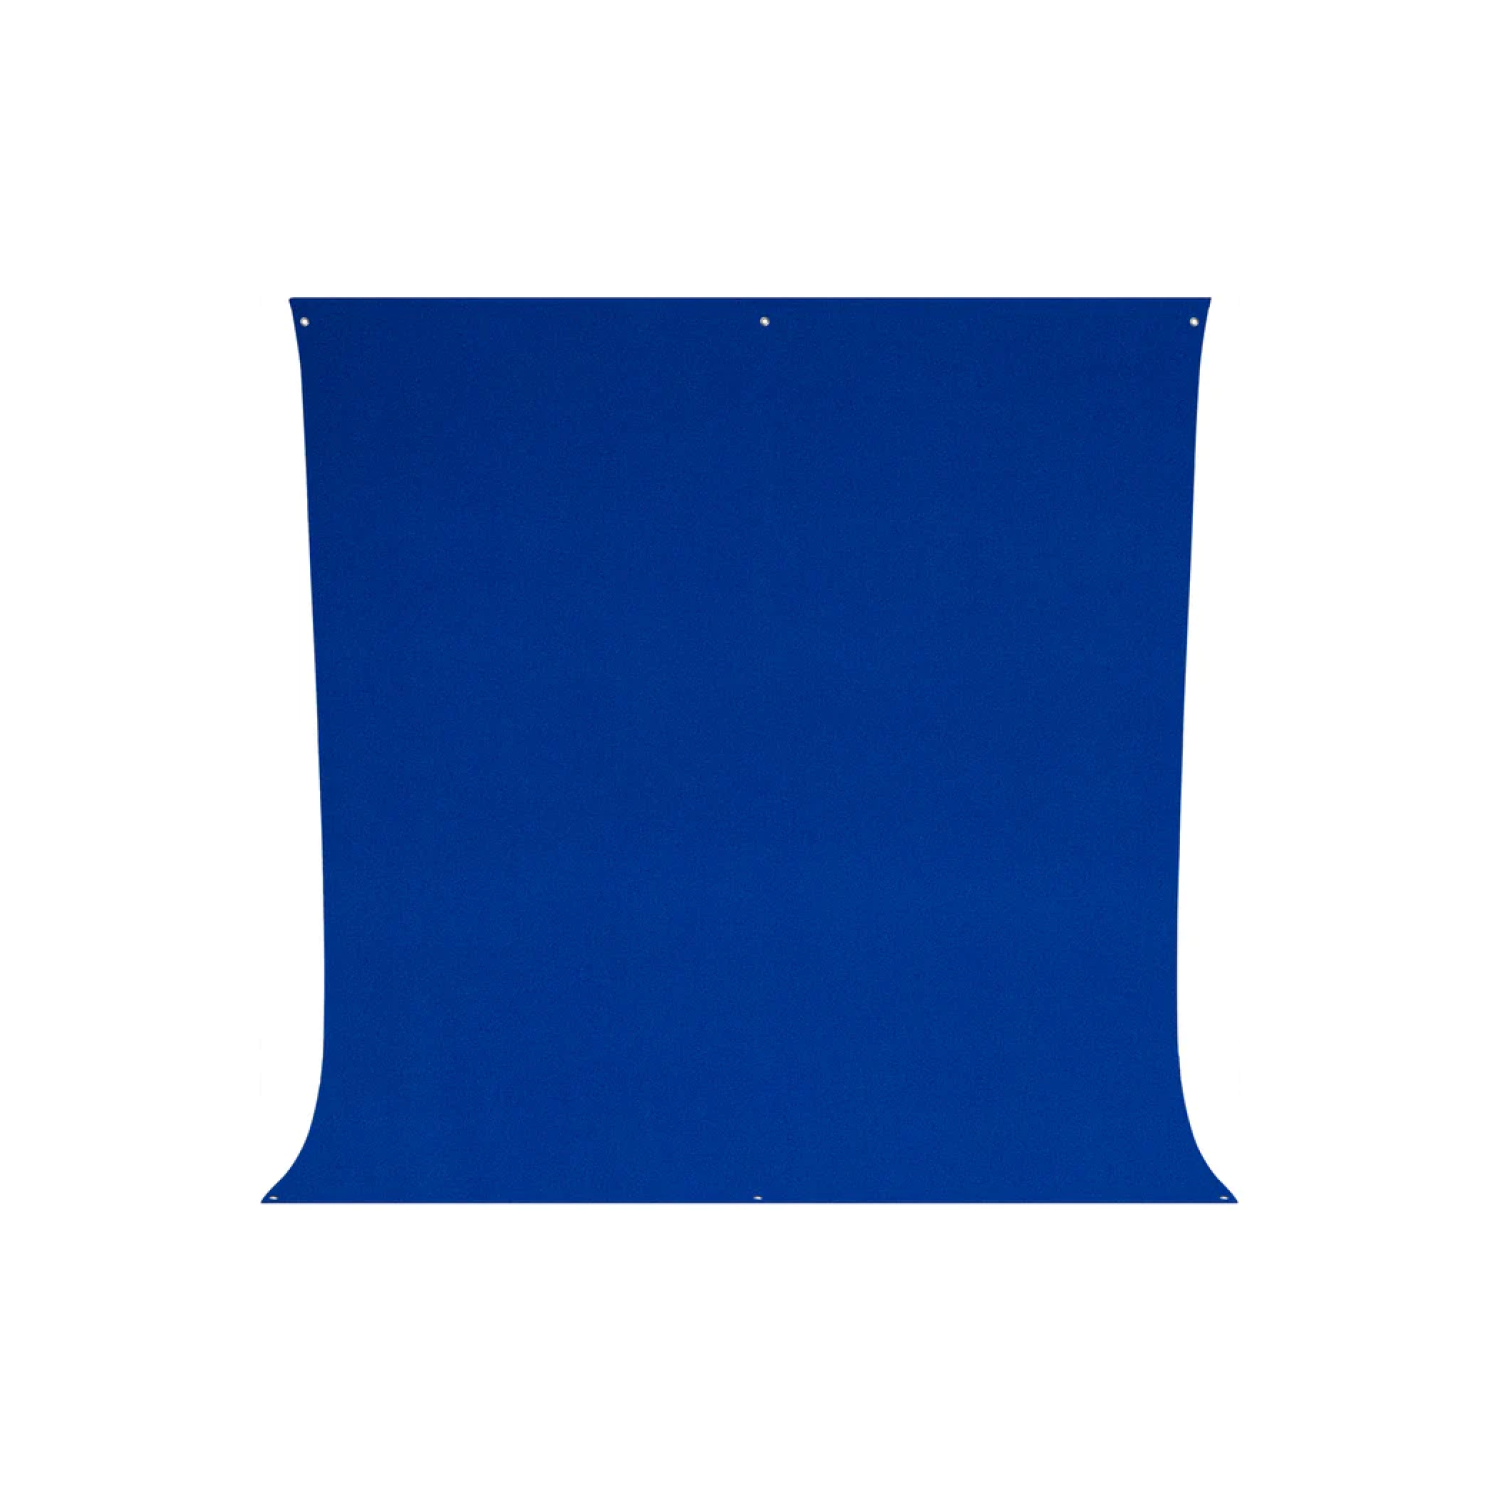 TEART DE RÉSISTANTS DE RILLONNES WESTCOTT - Blue à clé chroma (9 'x 10')